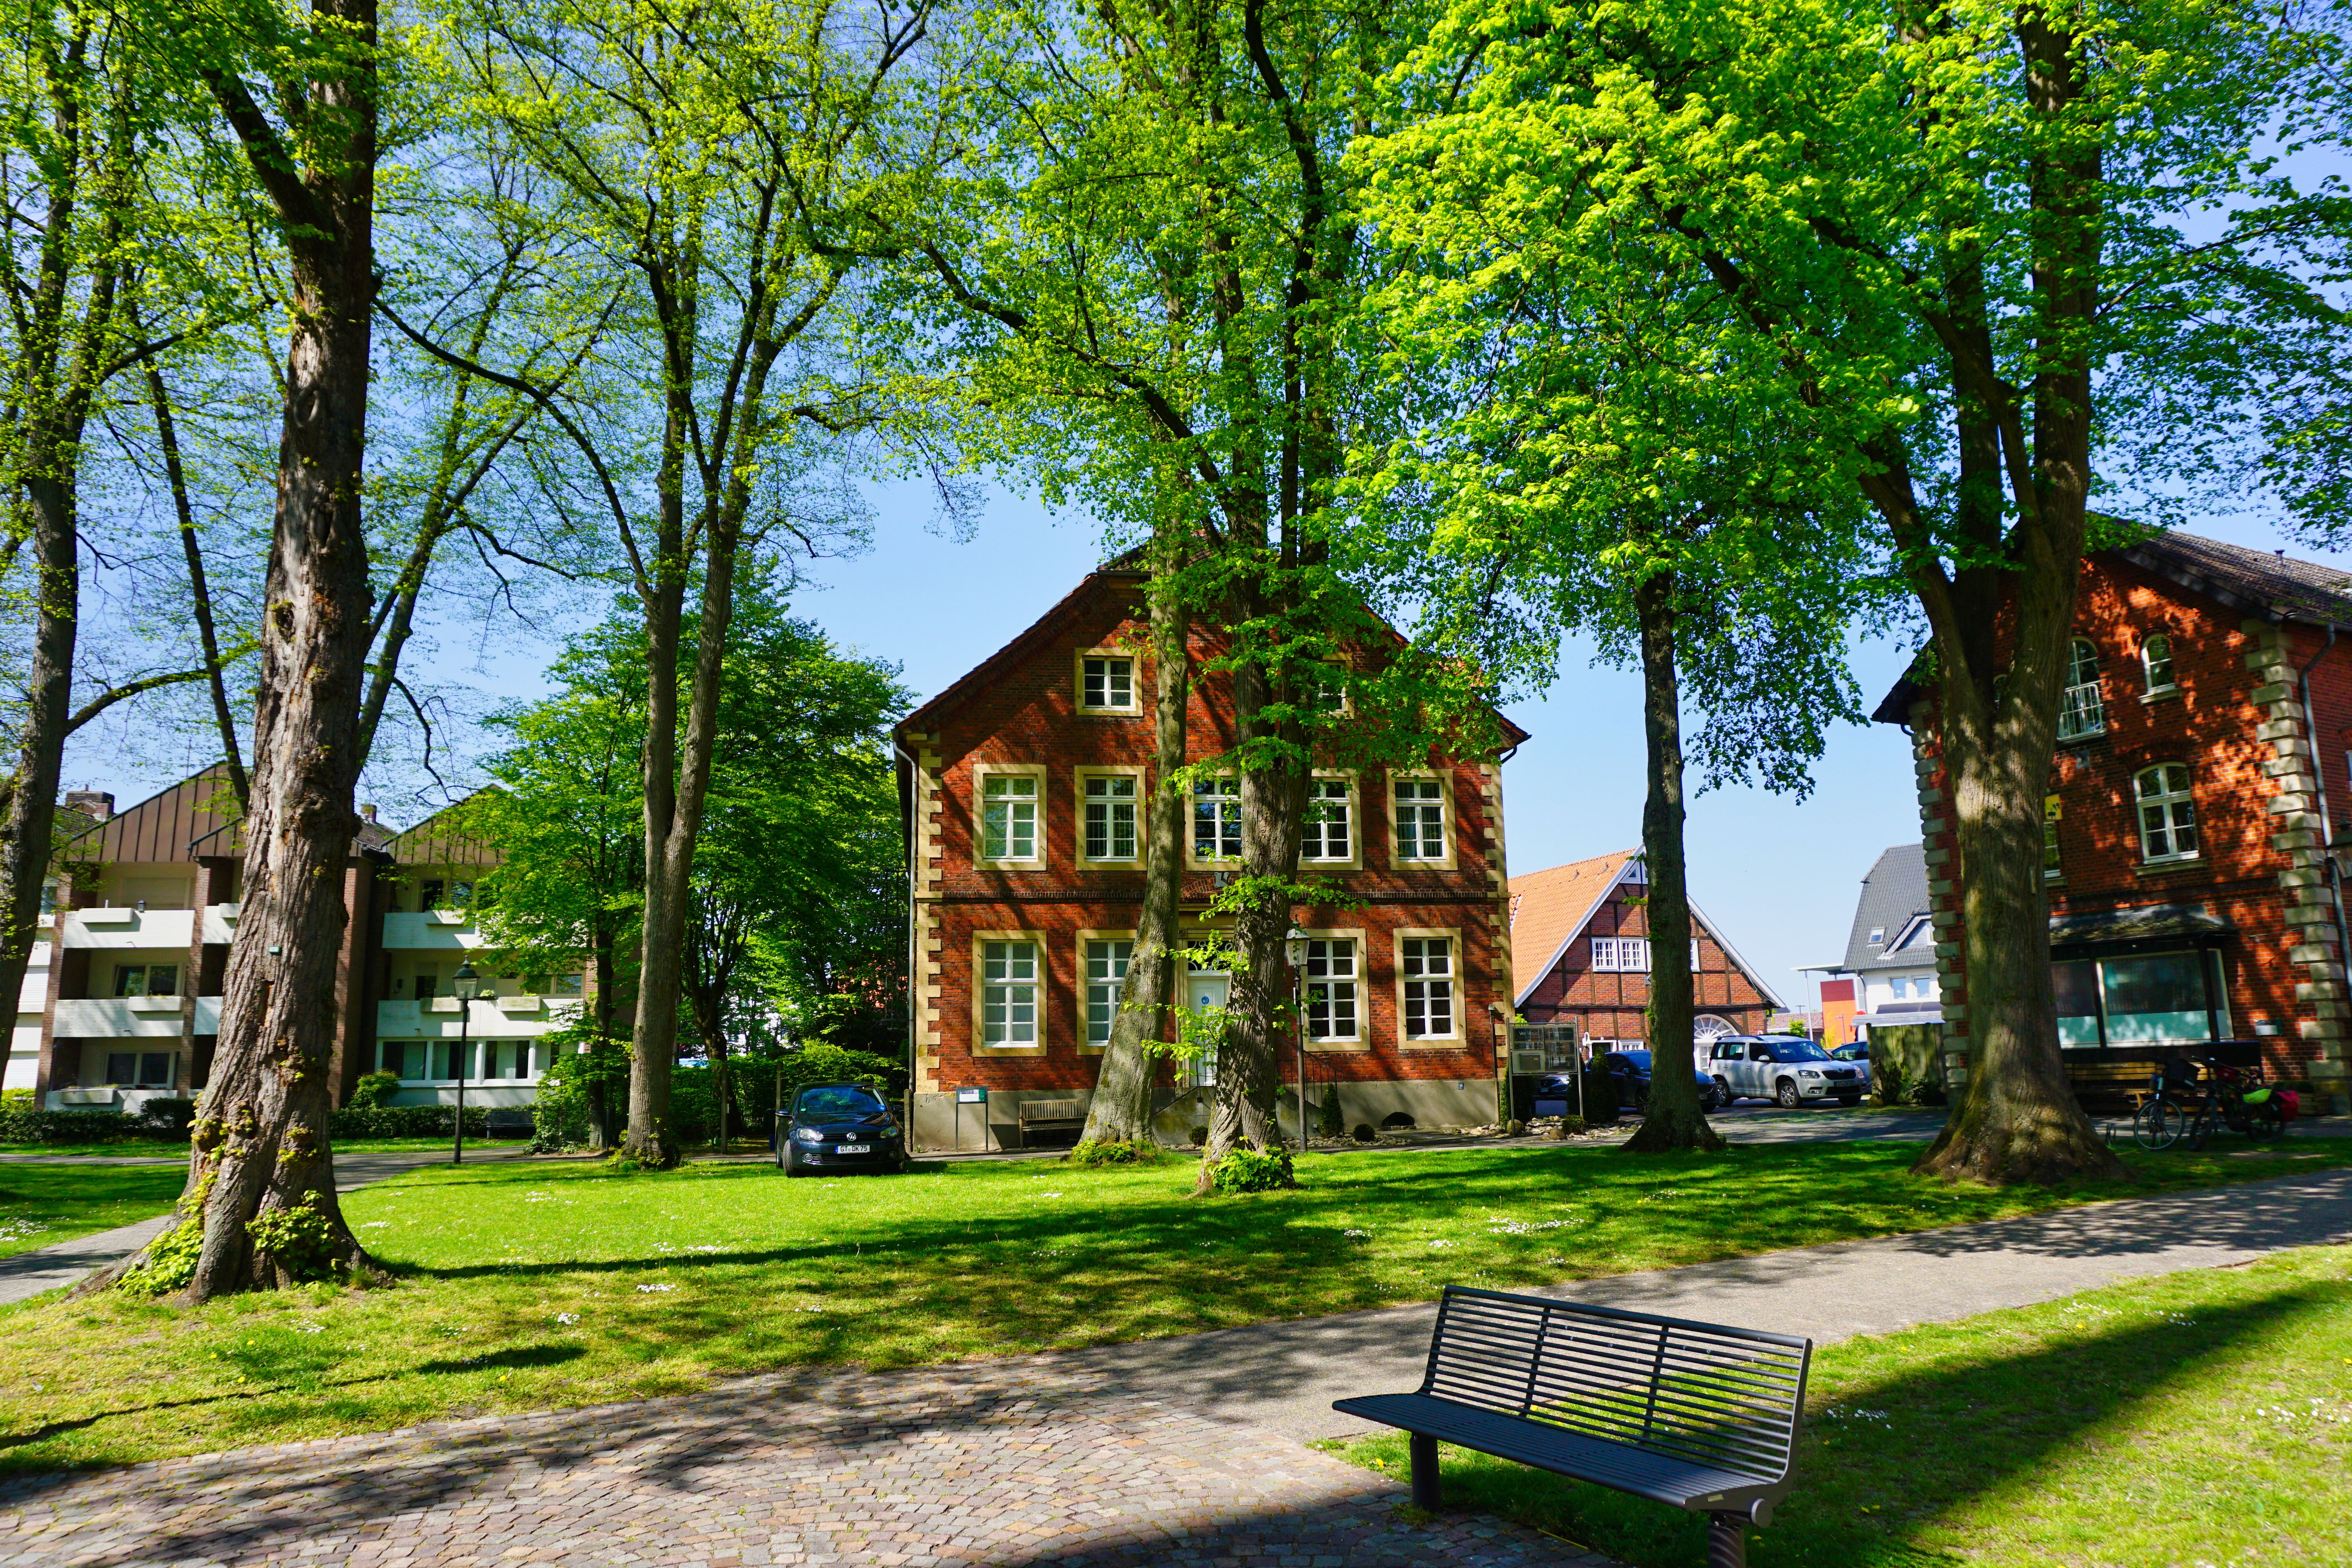 Gelände der ehemaligen Klosteranlage Clarholz, Herzebrock-Clarholz.
